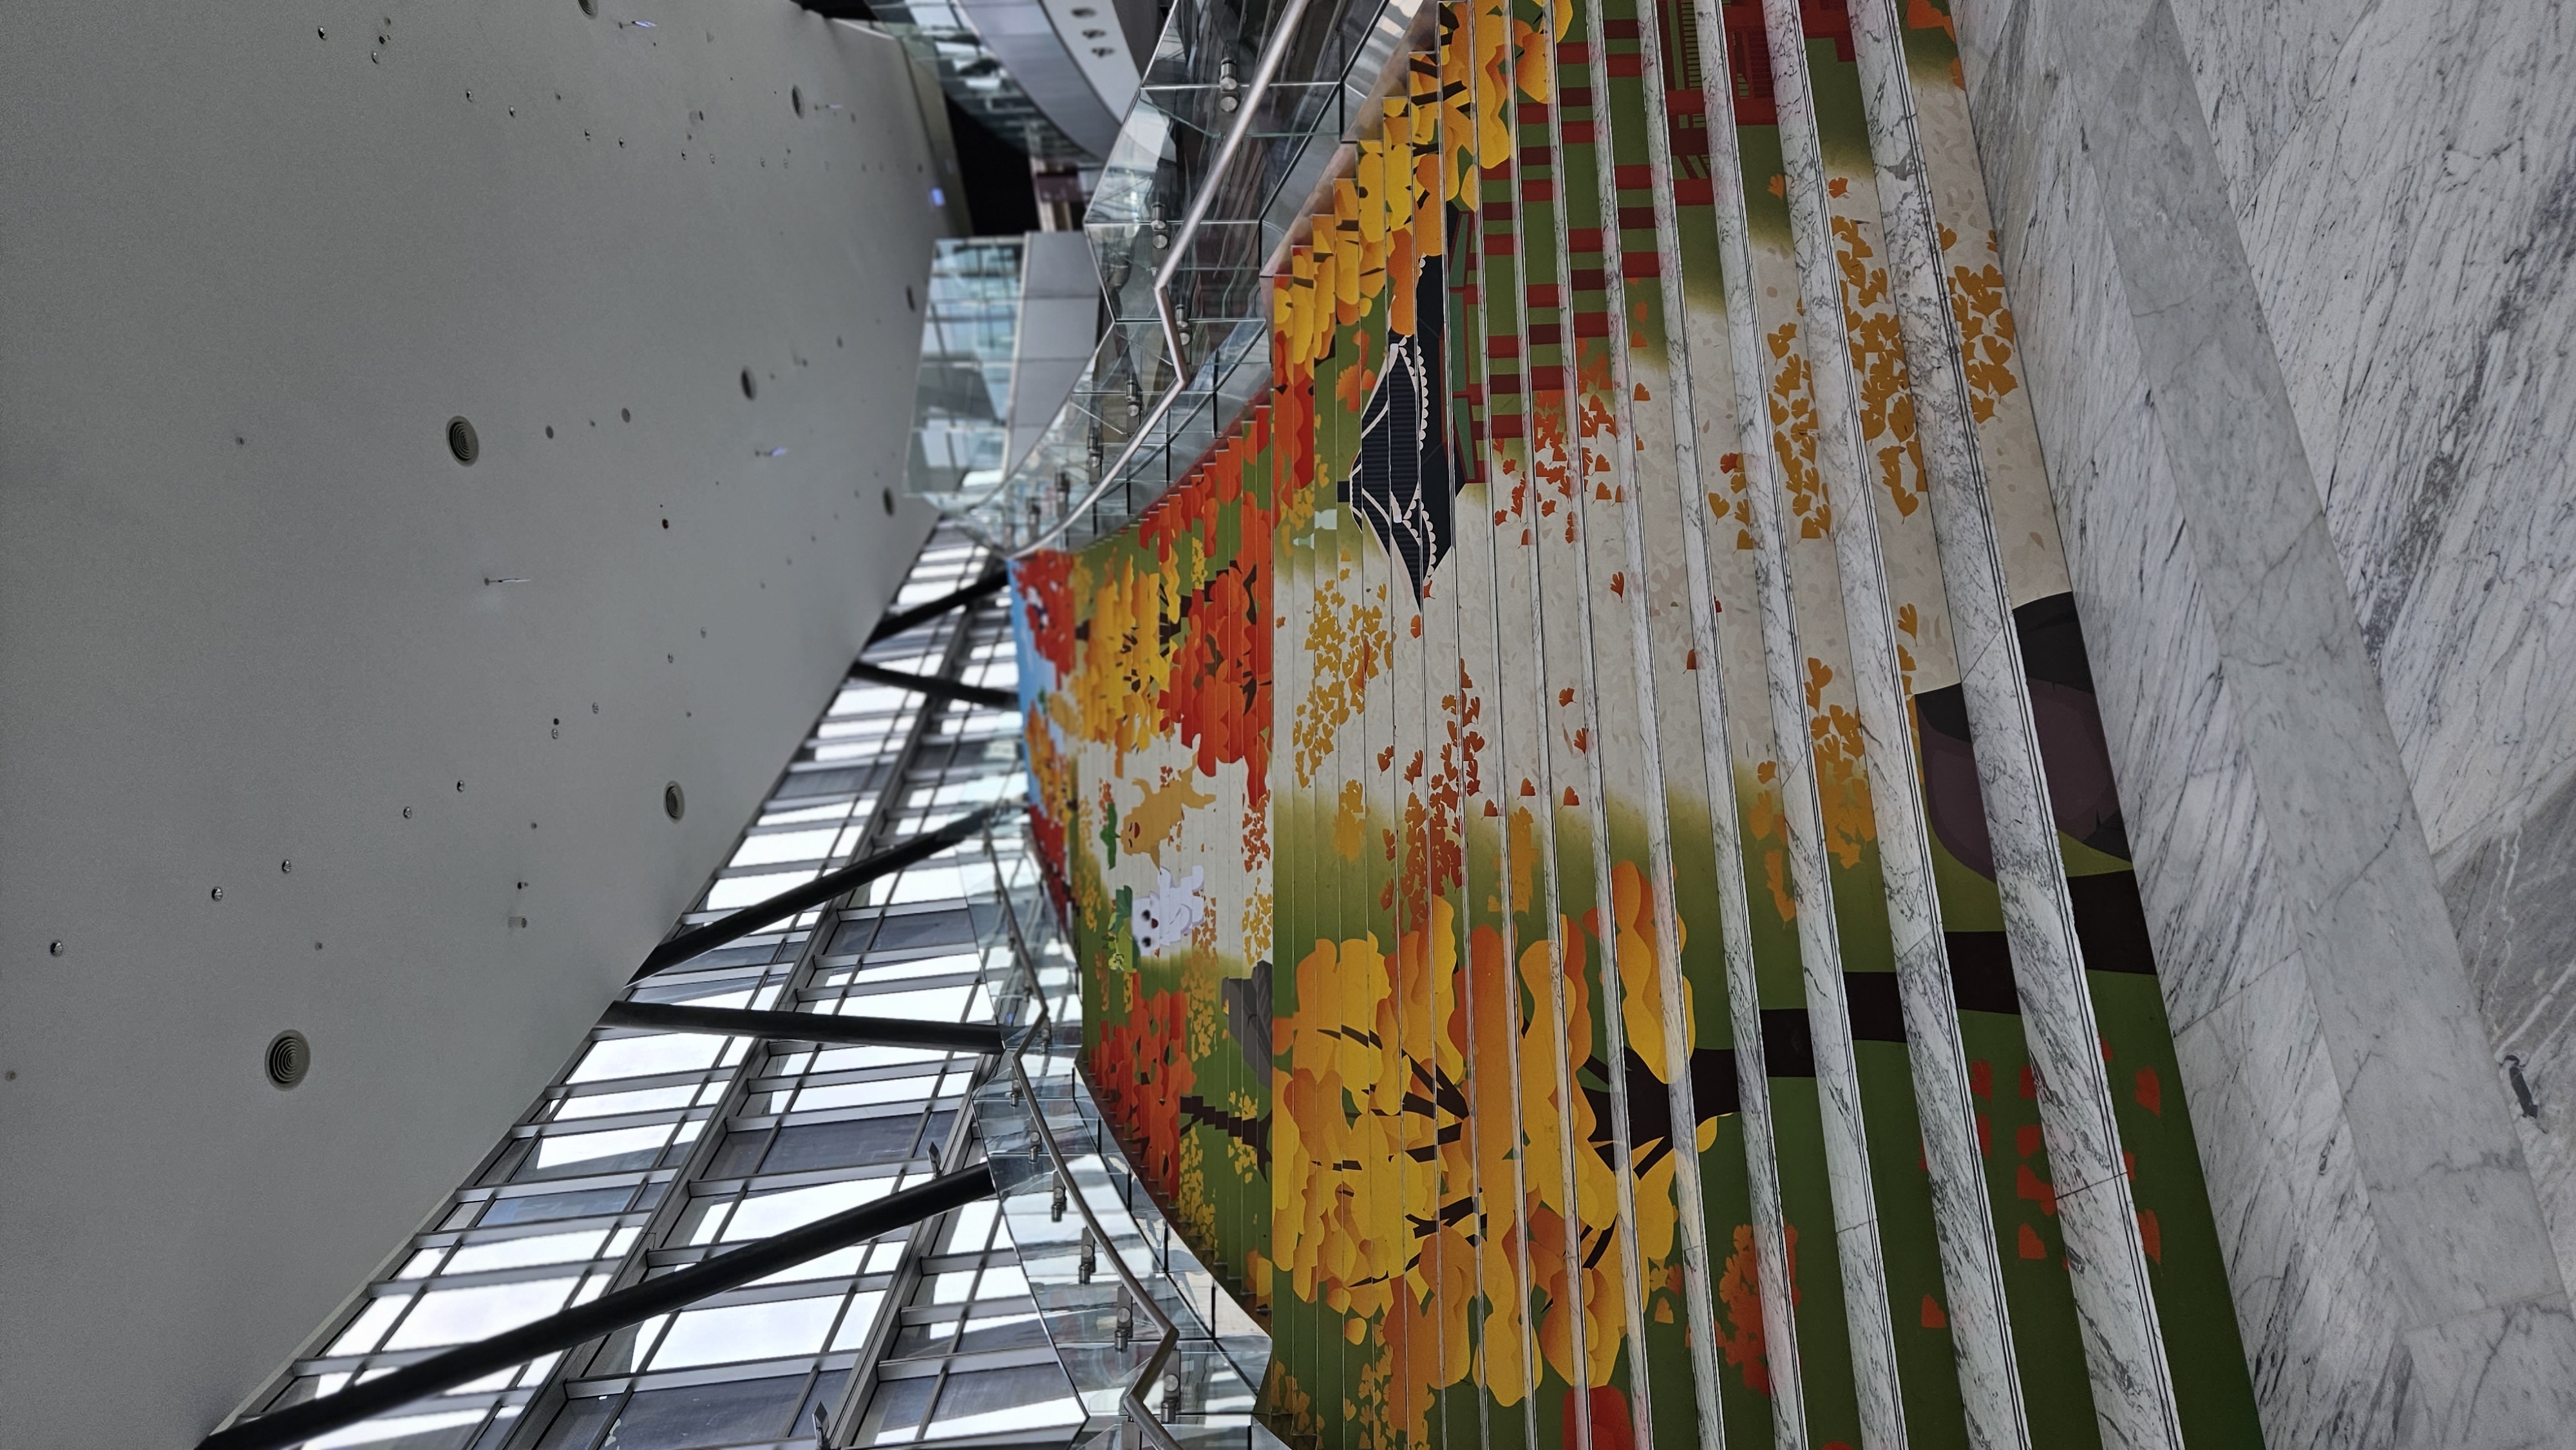 < 한국의 달 행사가 진행 중인 국립고궁박물관의 계단에는 한국의 인삼, 그리고 단풍이 그려져 있다 - 출처: 통신원 촬영 >